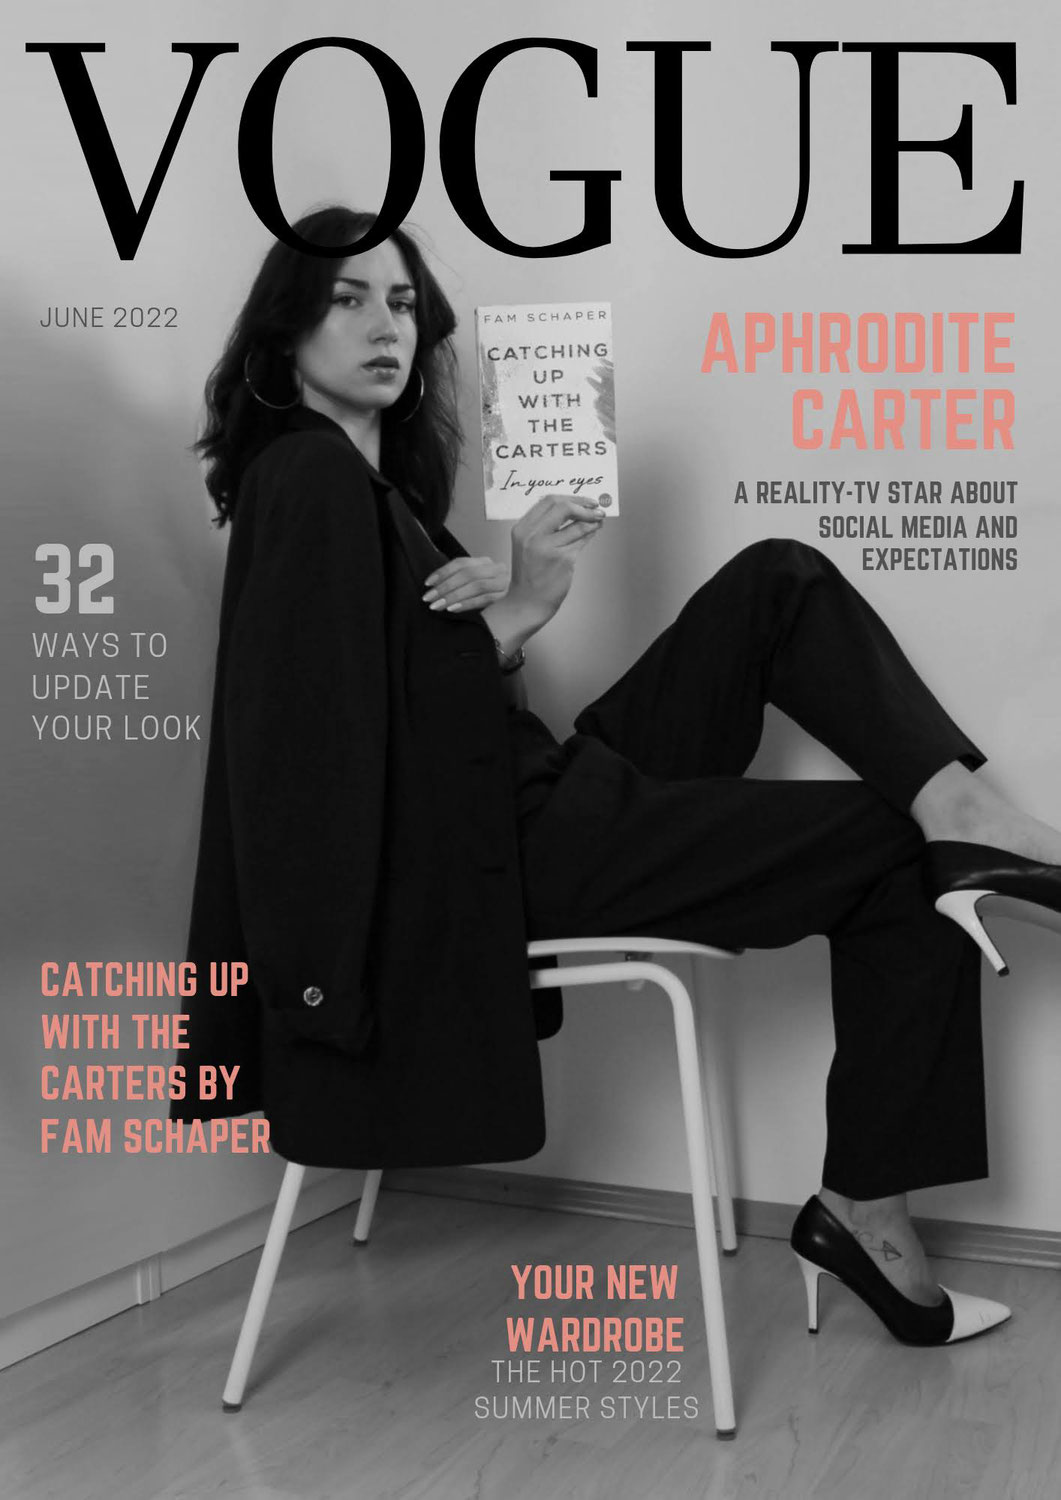 VOGUE Magazine - Aphrodite Carter Über Ihre Familie, Das Leben Als Reality-TV-Star Und Ihre Zukunft